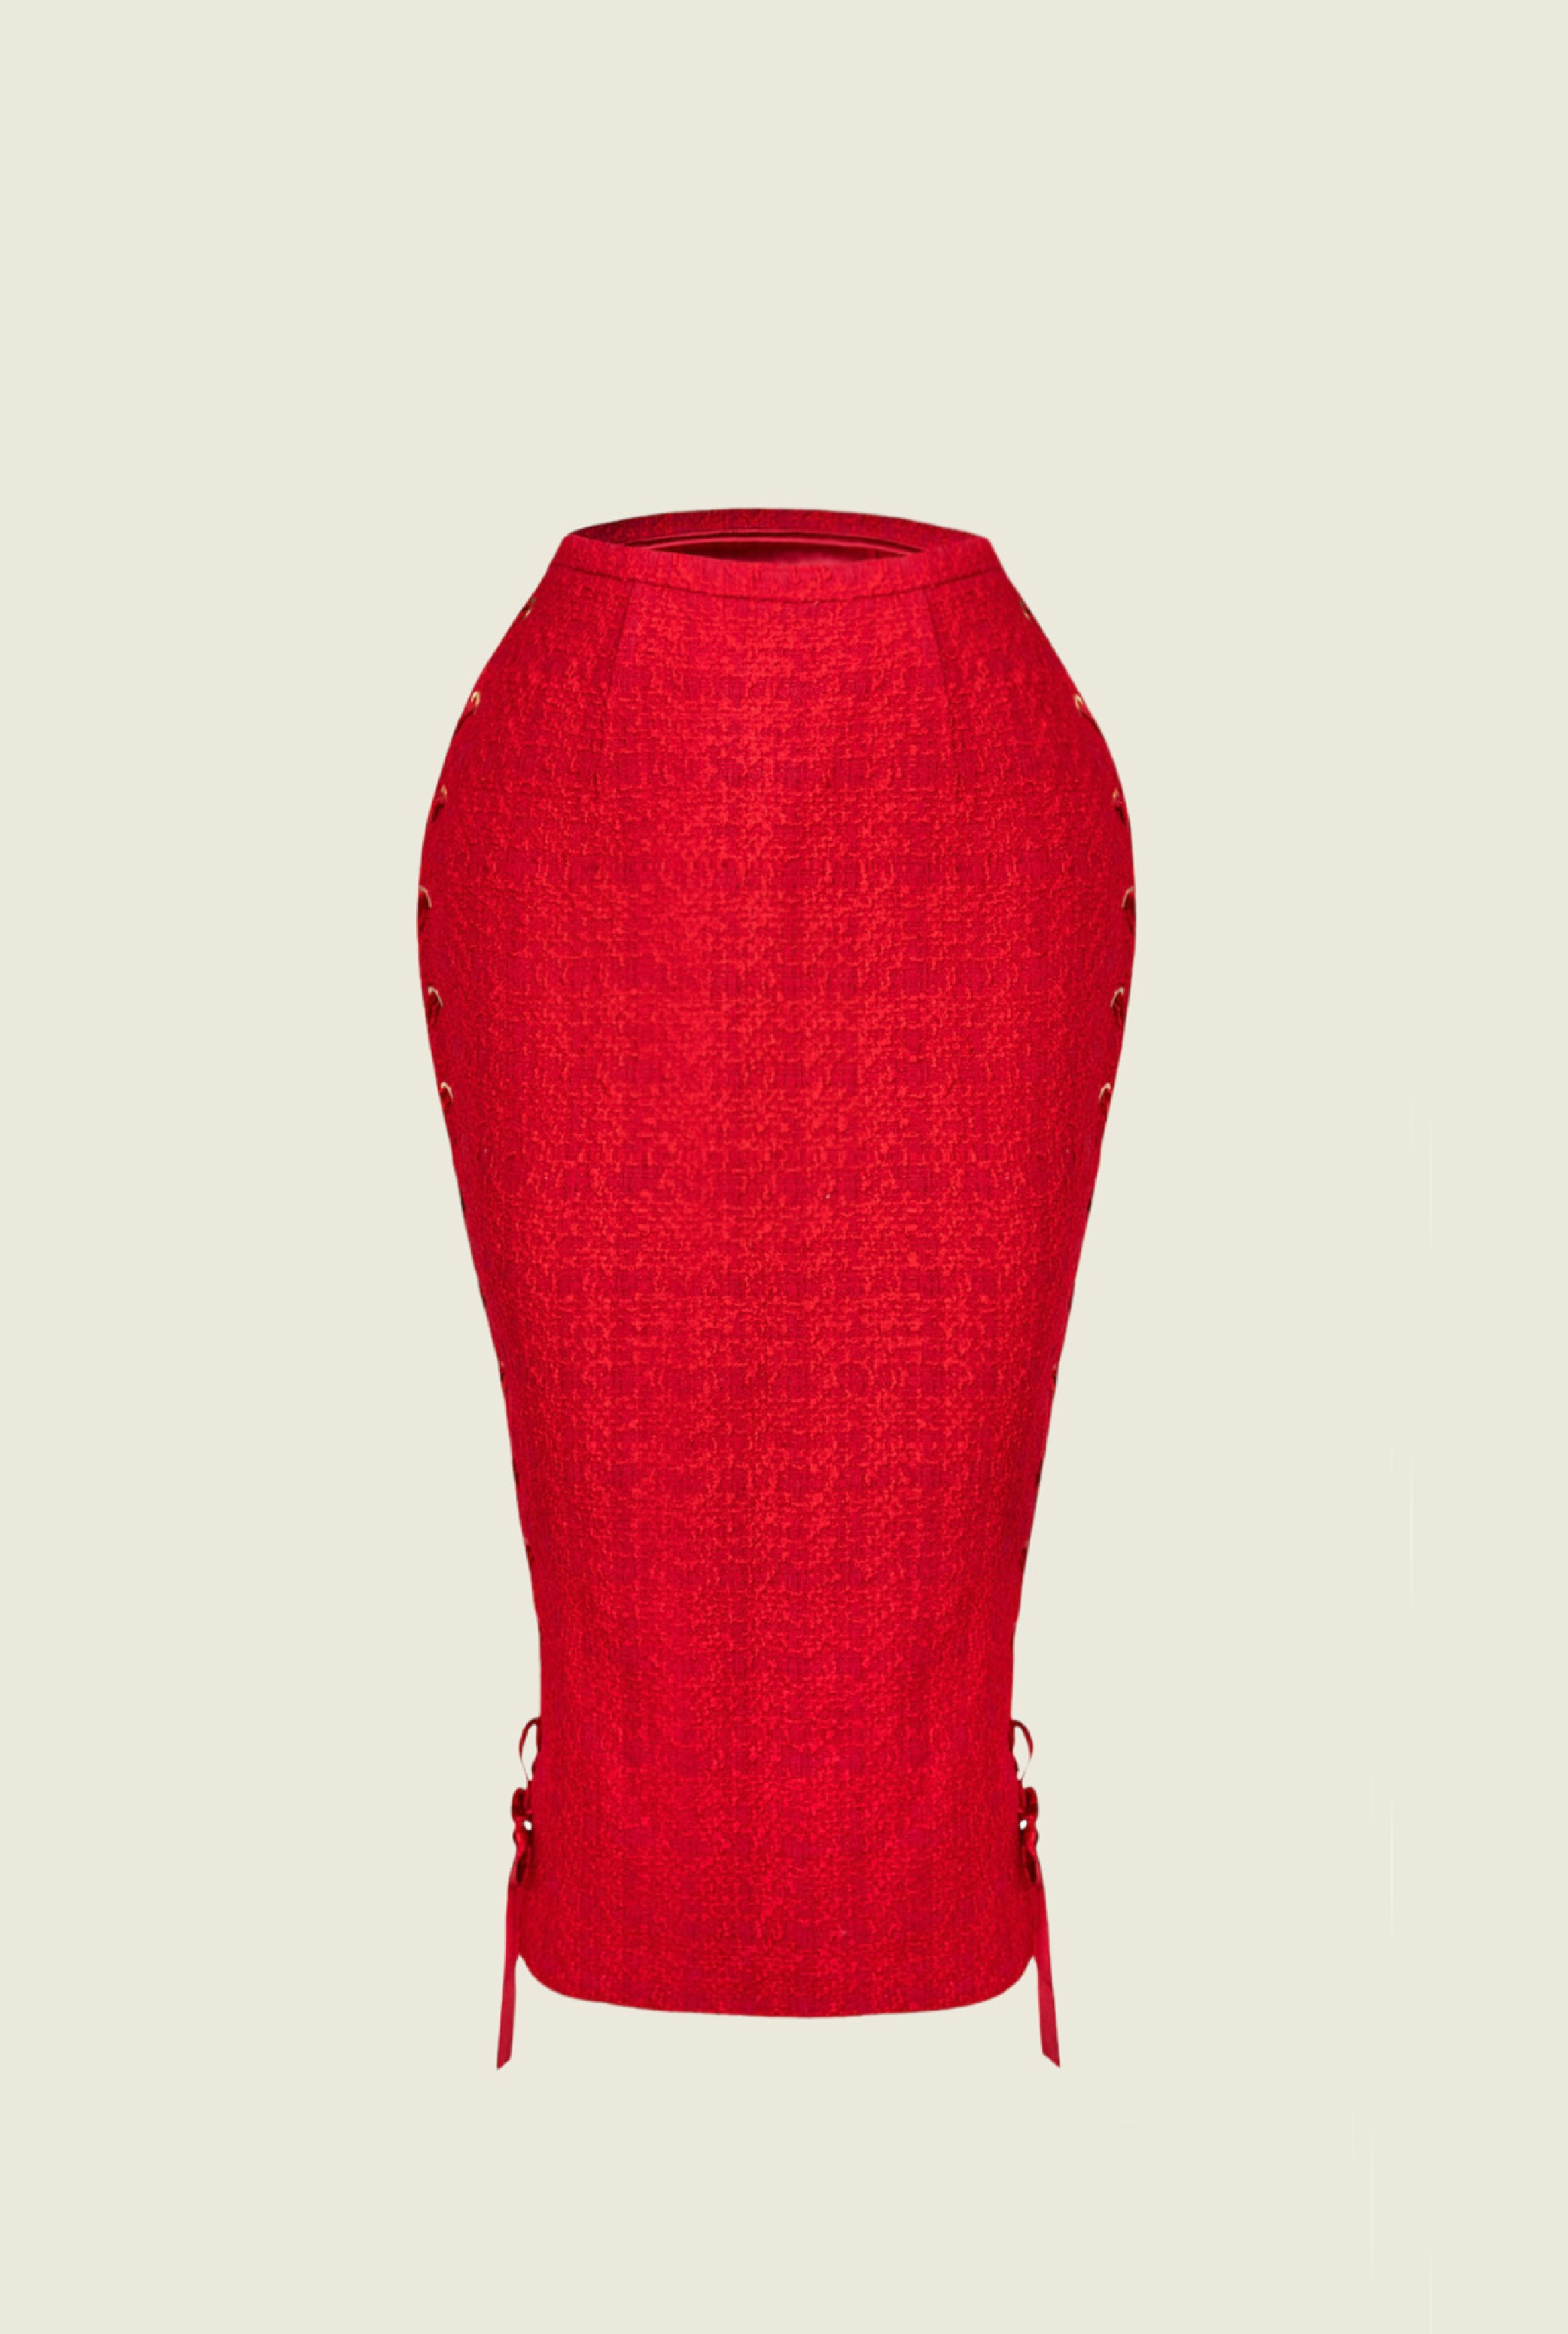 Rouge Tweed Veste and Skirt